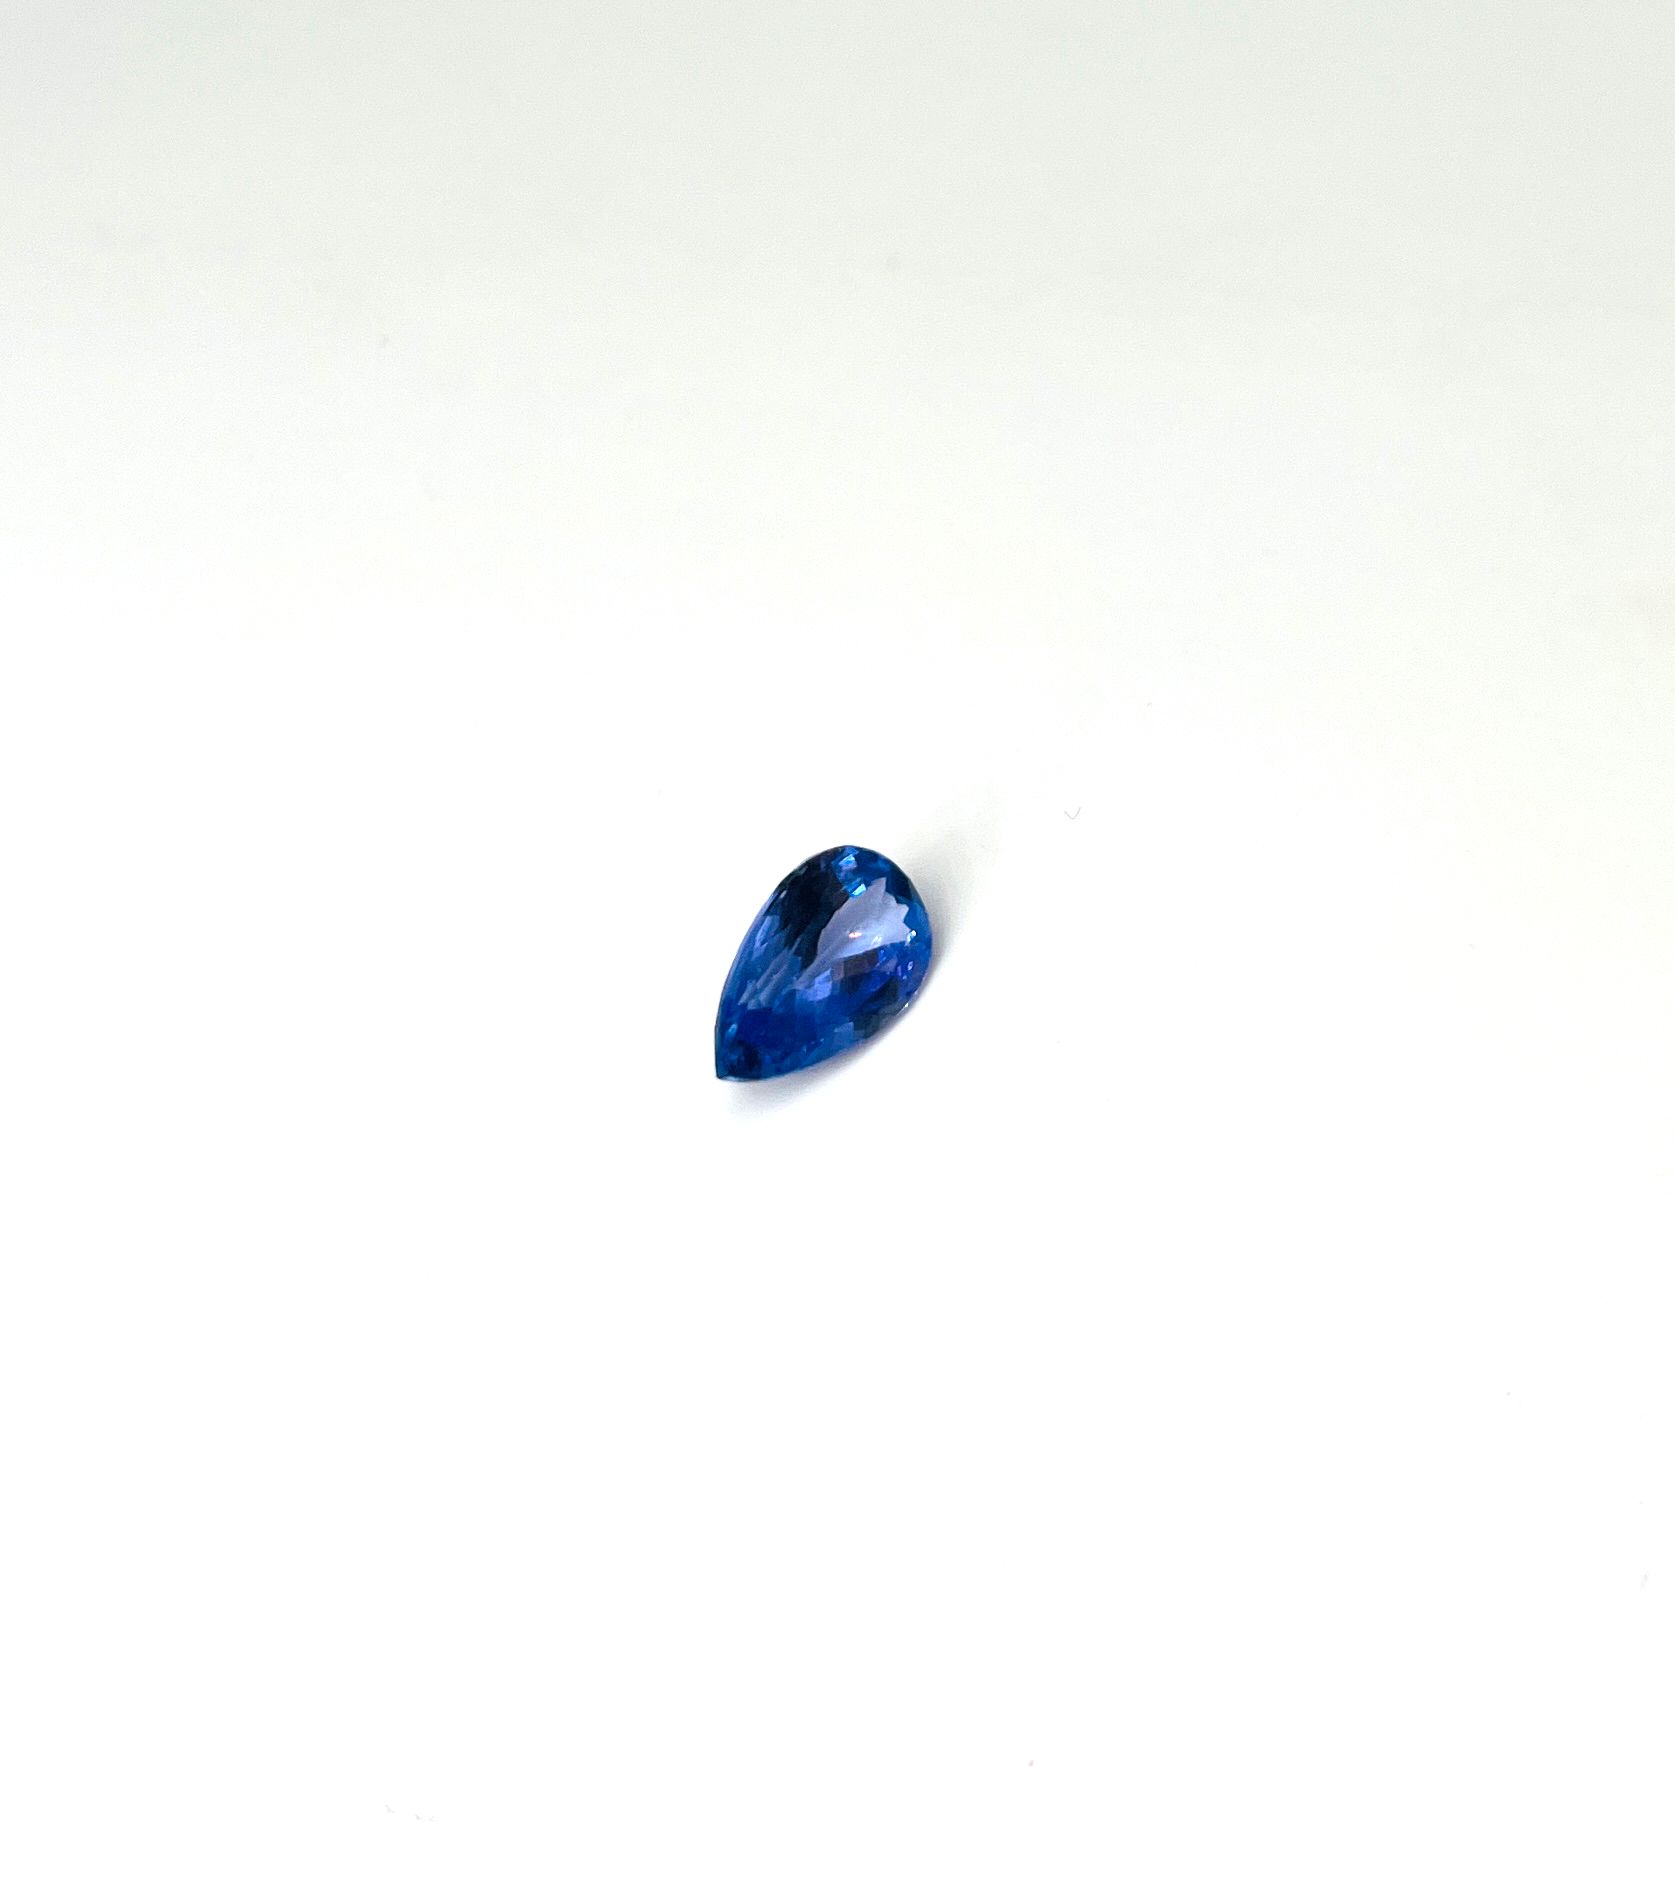 Null 坦桑石梨形切割，重3.68克拉 附有AIG证书，证明宝石的性质